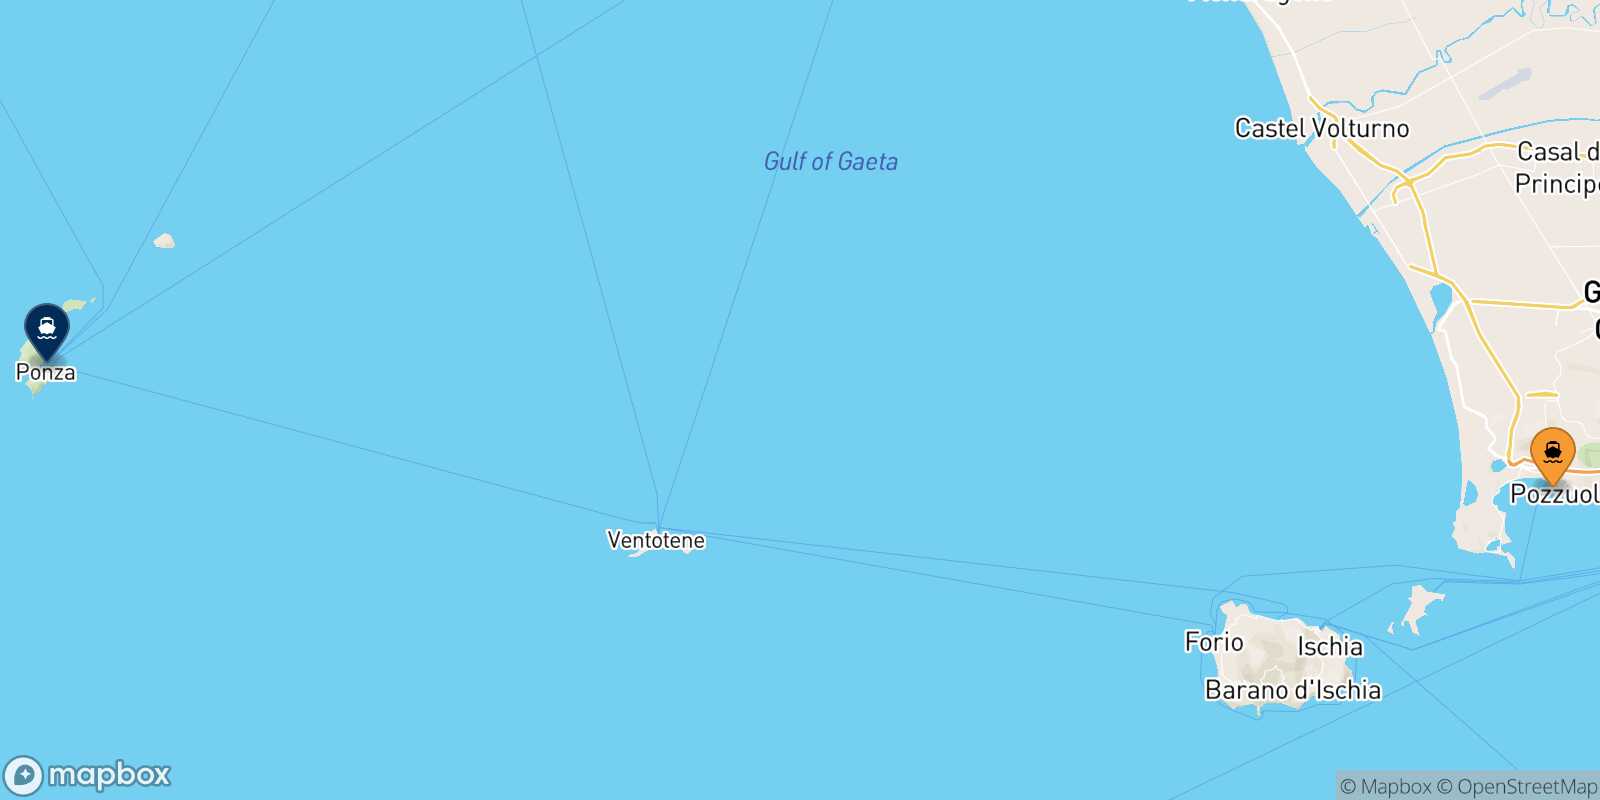 Mappa della rotta Casamicciola (Ischia) Ponza